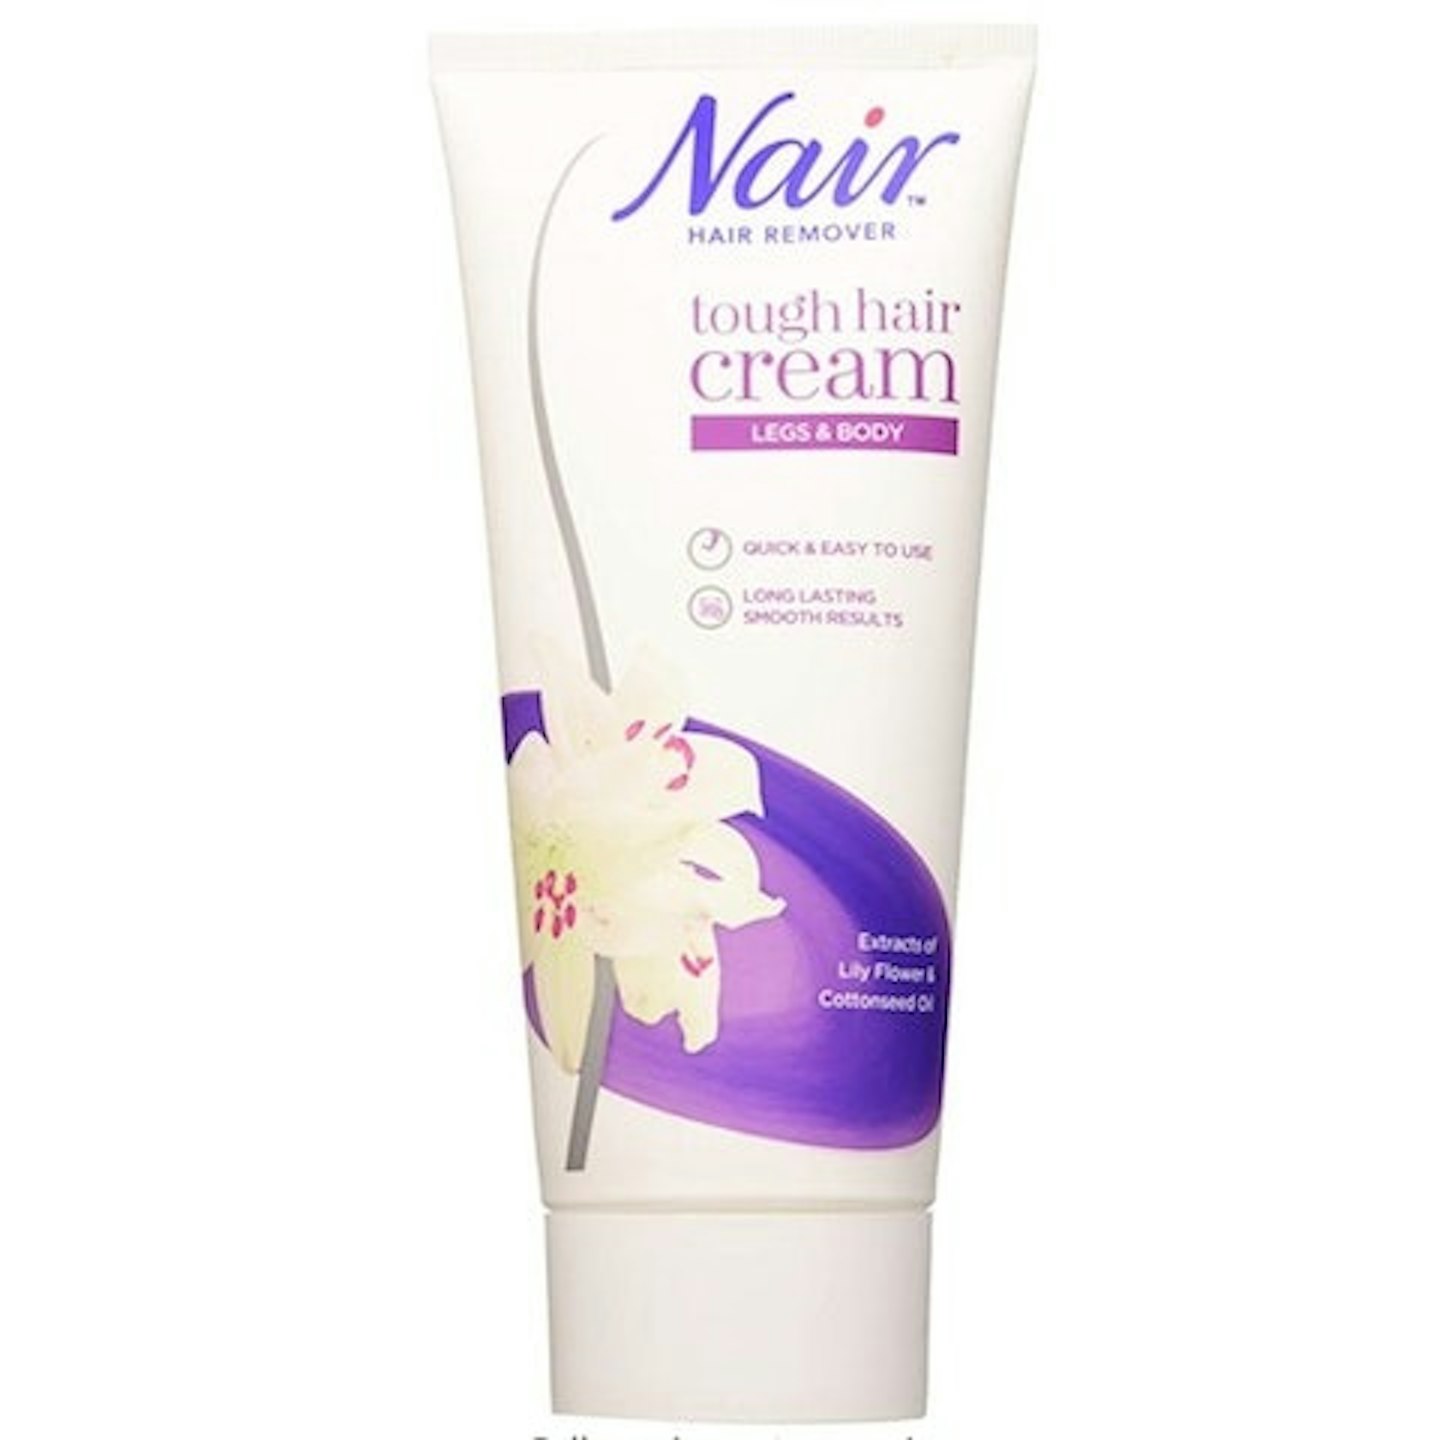 Nair Tough Hair Removal Cream - for Coarse & Dark Hair on Legs & Body 200ml